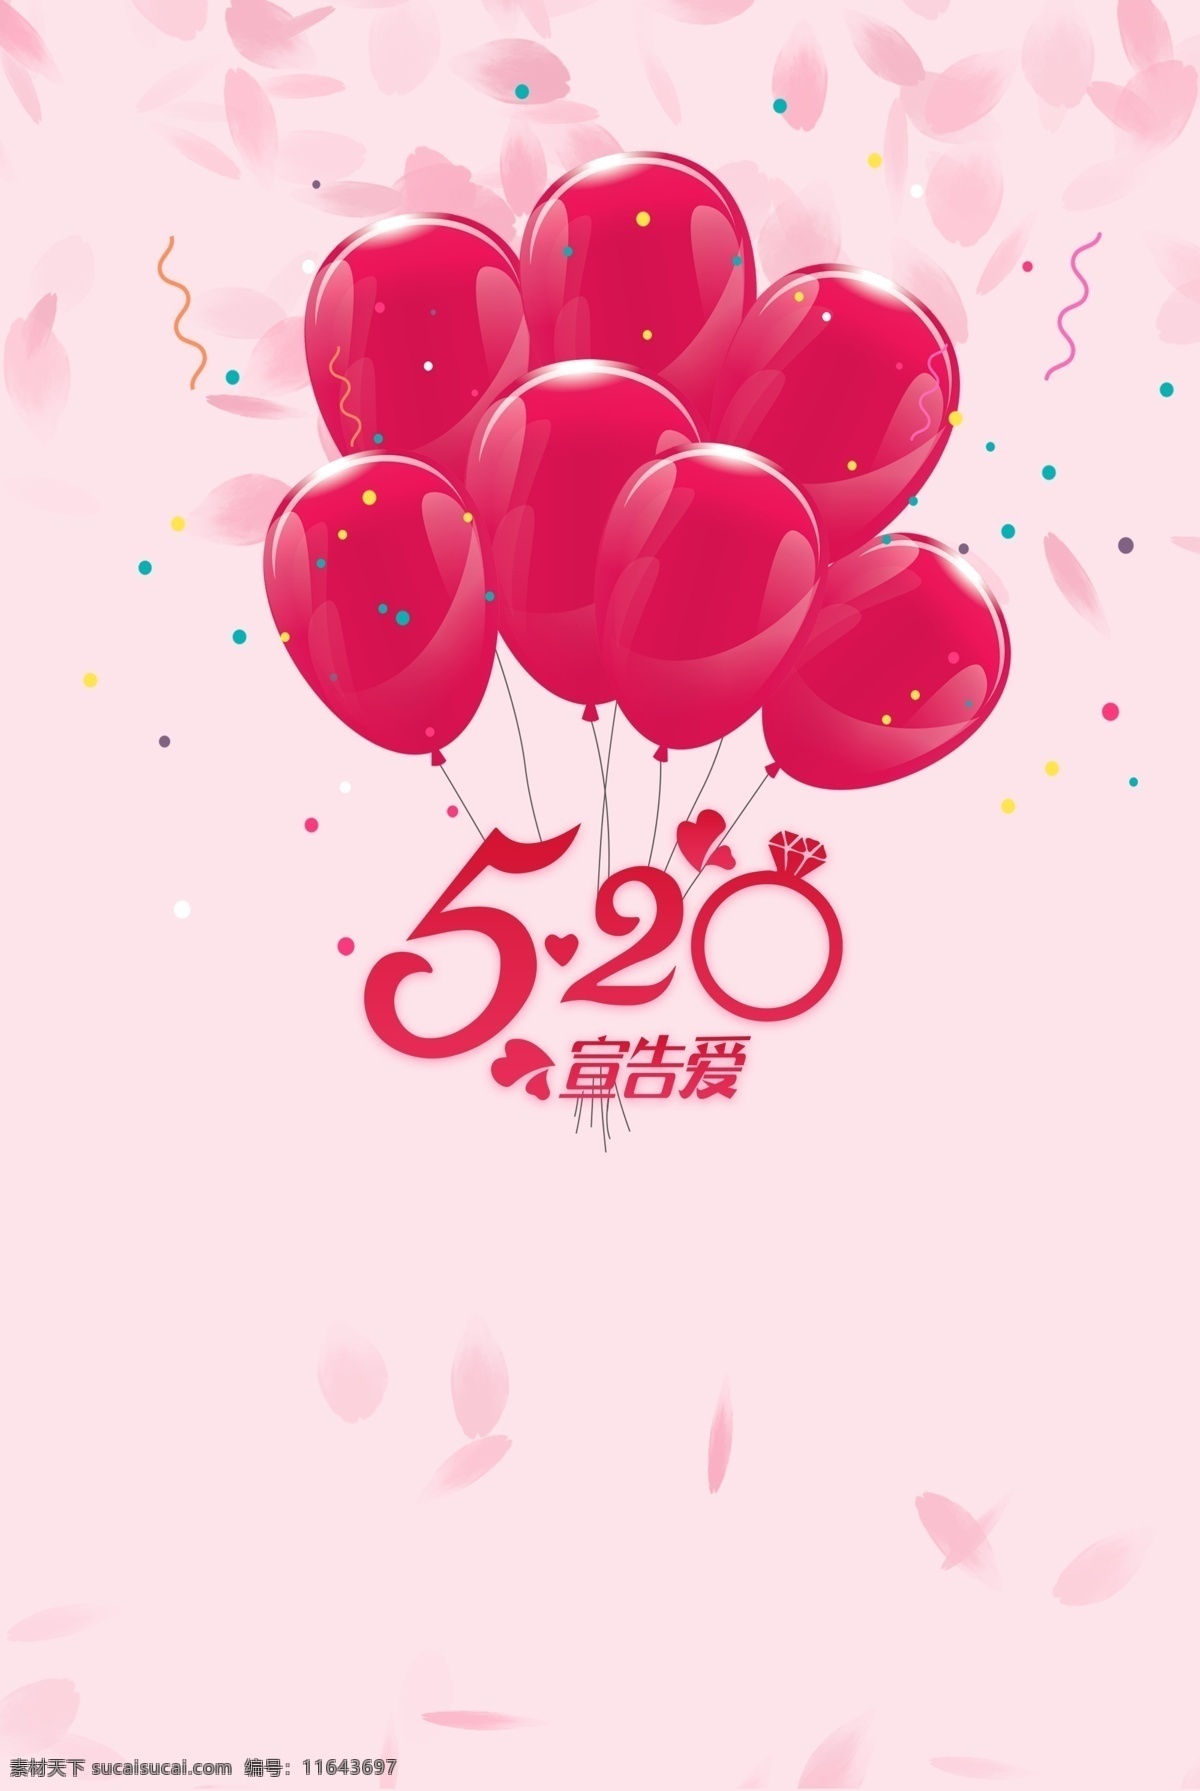 520 情人节 背景 图 520情人节 520告白日 气球 粉色 钻戒 恋人 恋爱 爱